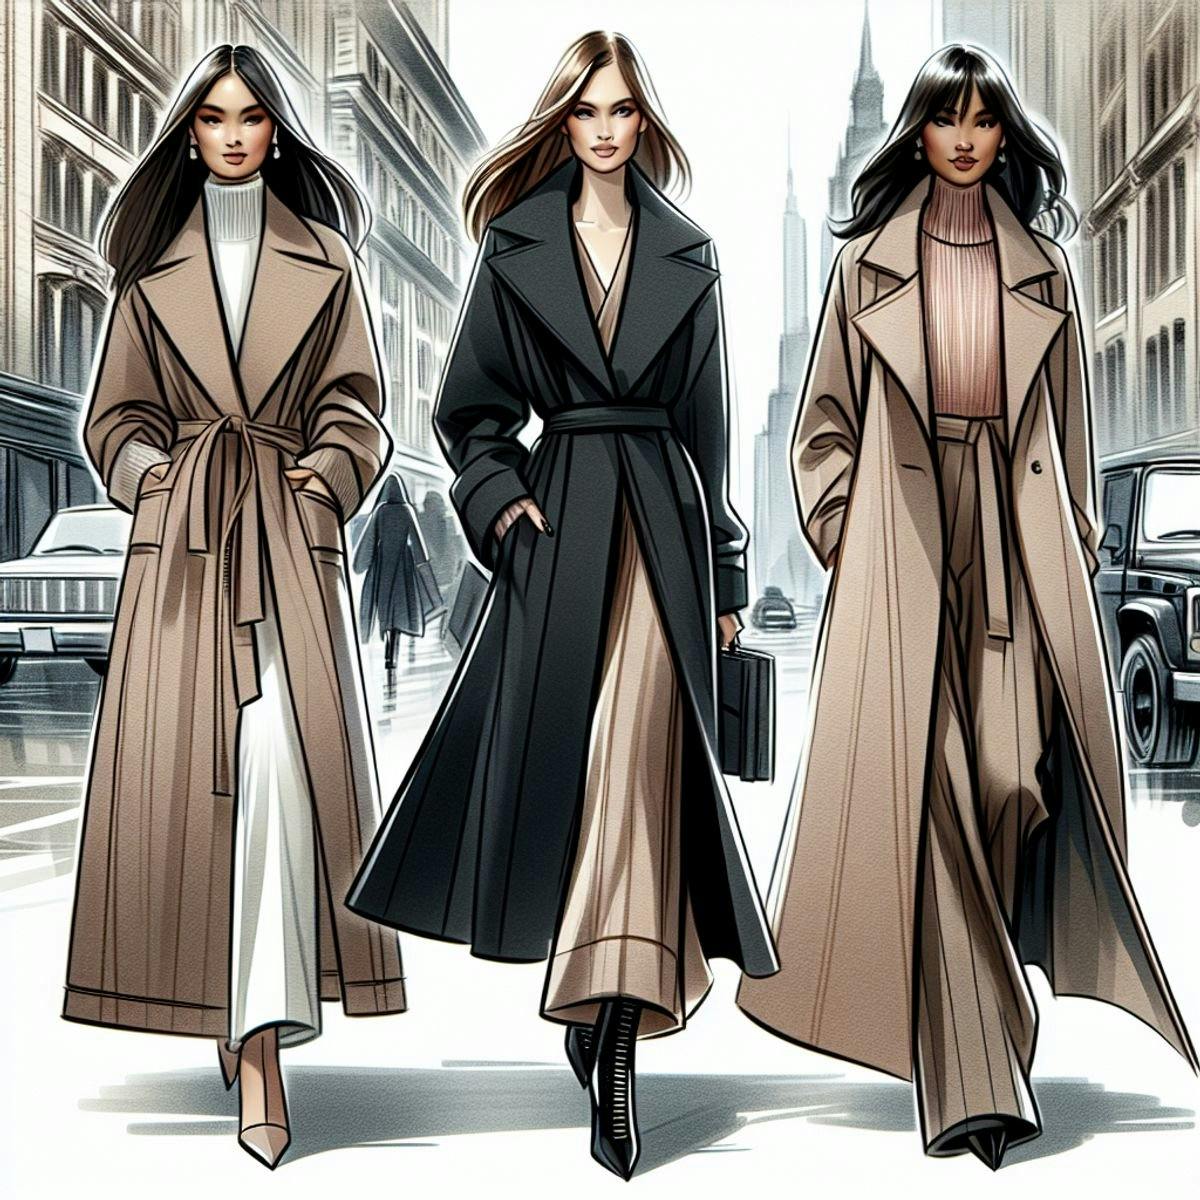 women wearing trendy winter coats